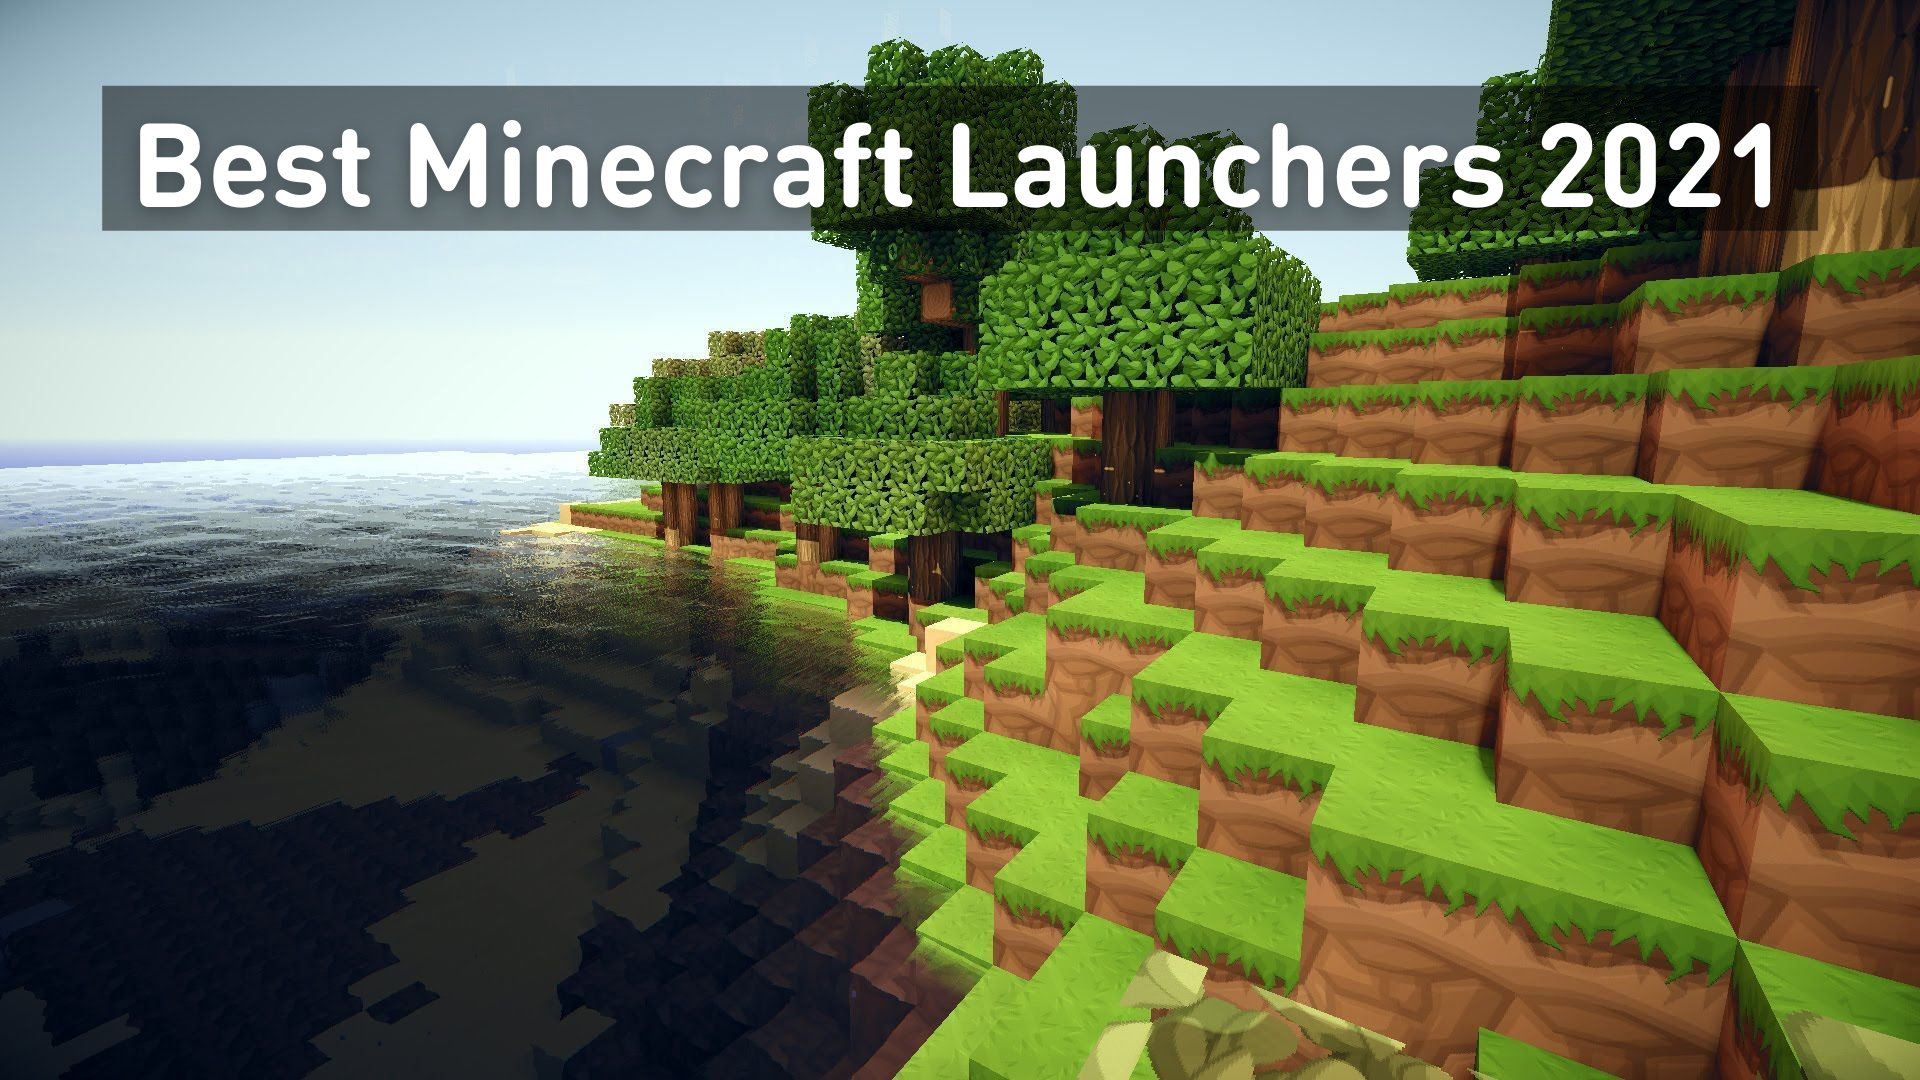 Minecraft online launcher